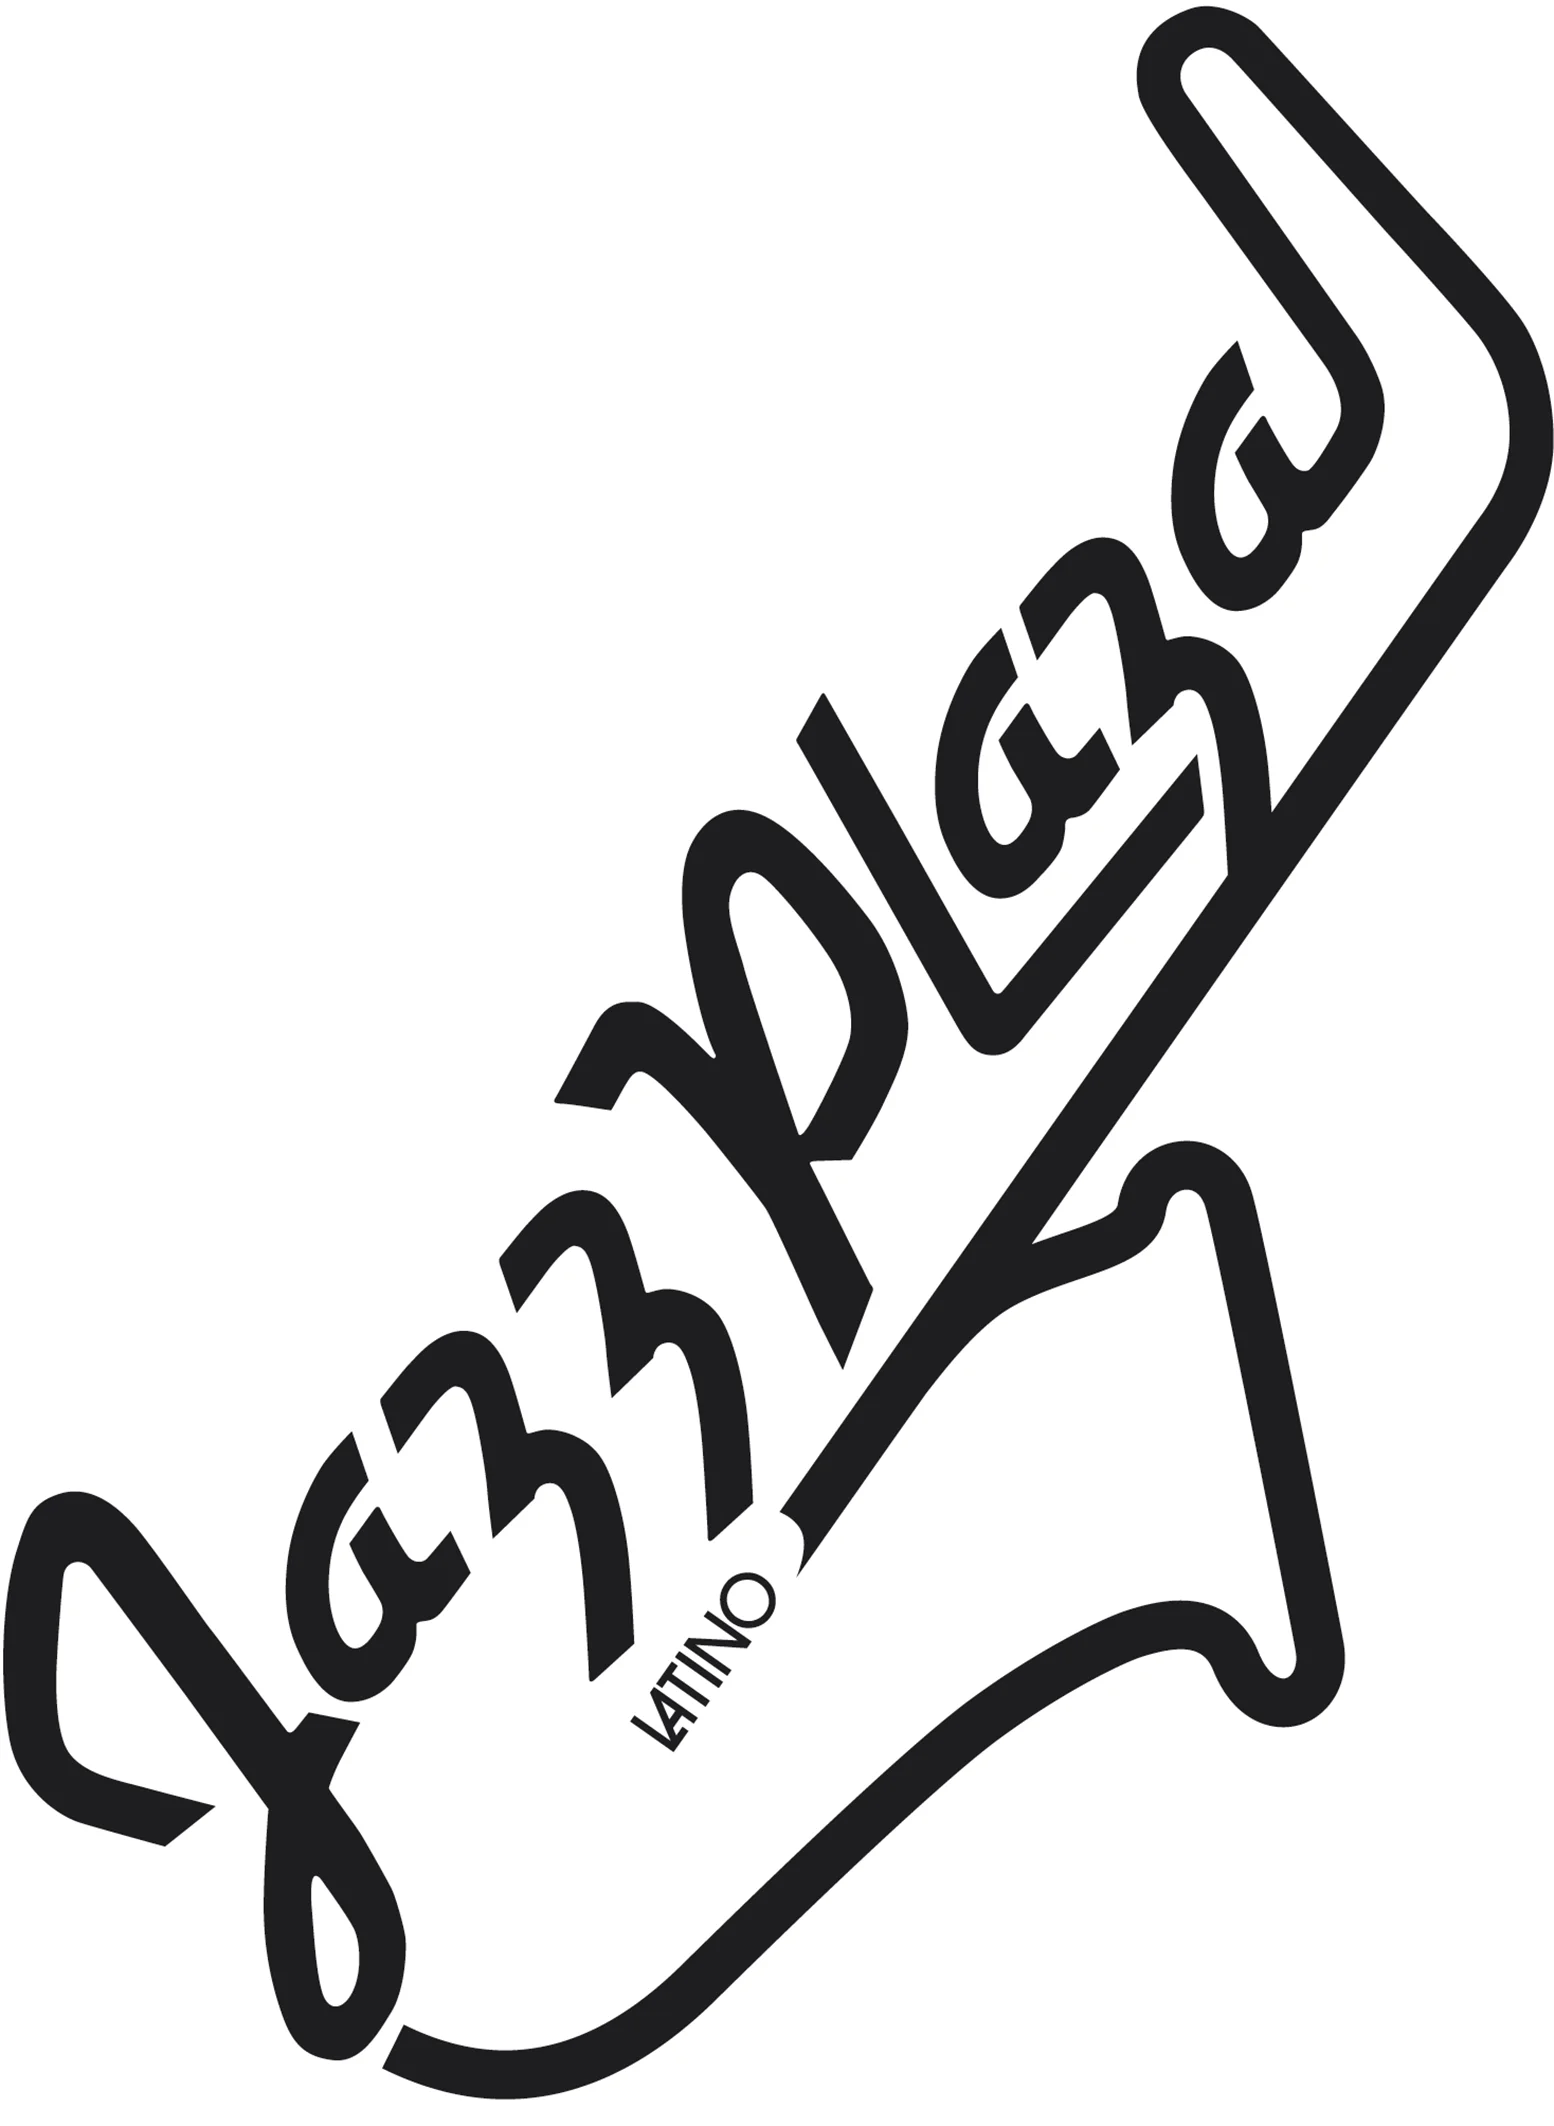 Papelería y Logotipo Festival Internacional Jazz Latino Plaza, cuba